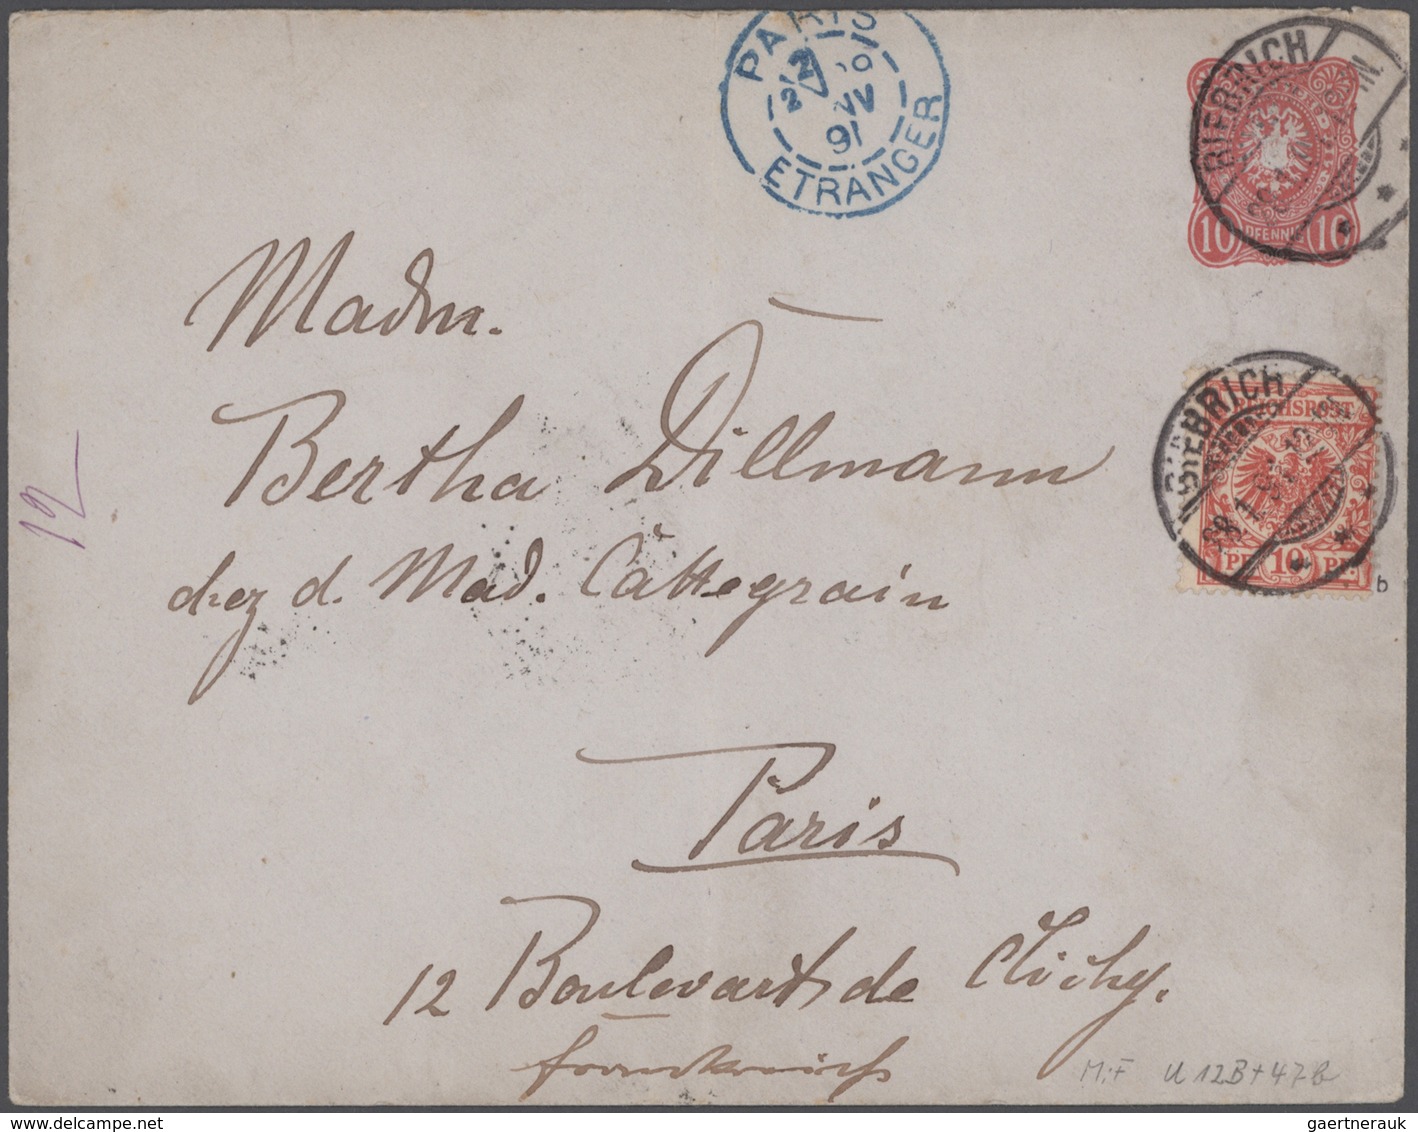 Deutsches Reich: 1872/1932, interessanter und vielseitiger Briefeposten ab Brustschildausgaben bis E